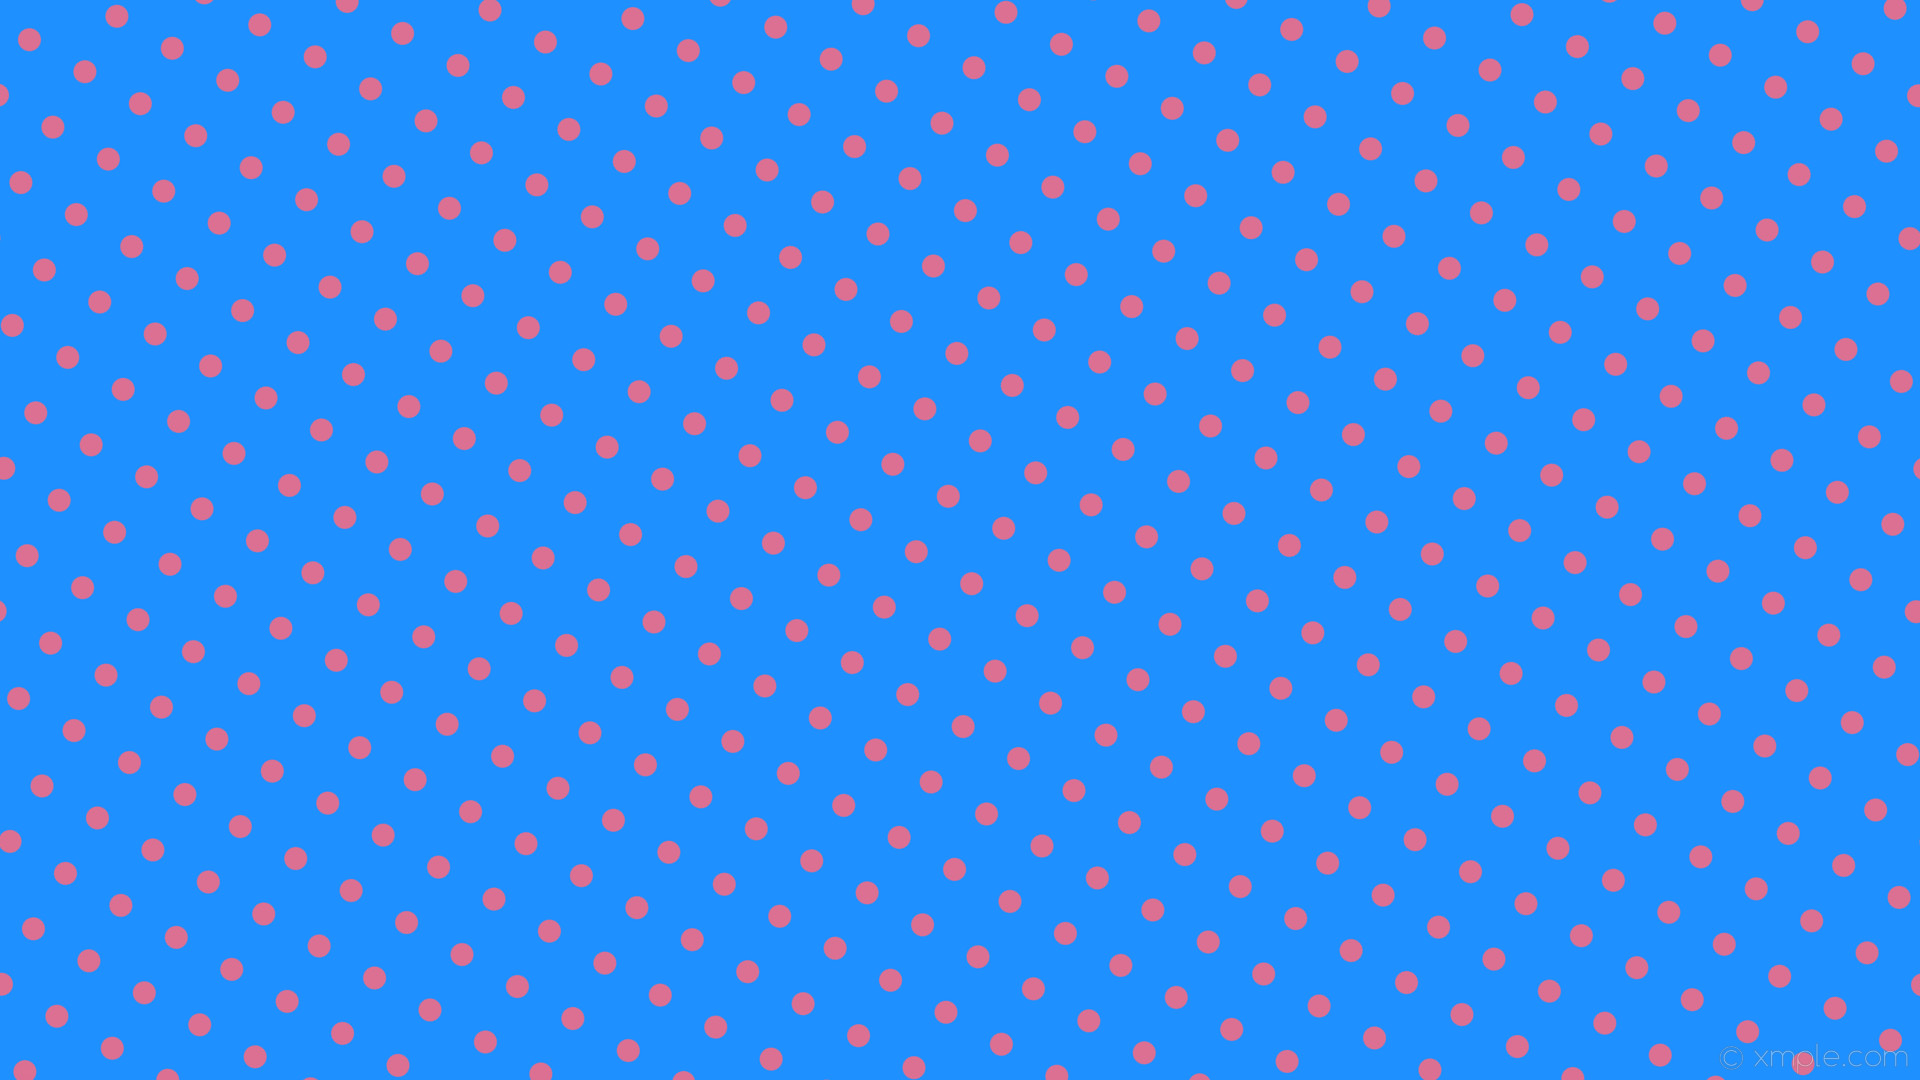 Wallpaper spots pink blue polka dots dodger blue pale violet red e90ff #db7093 330